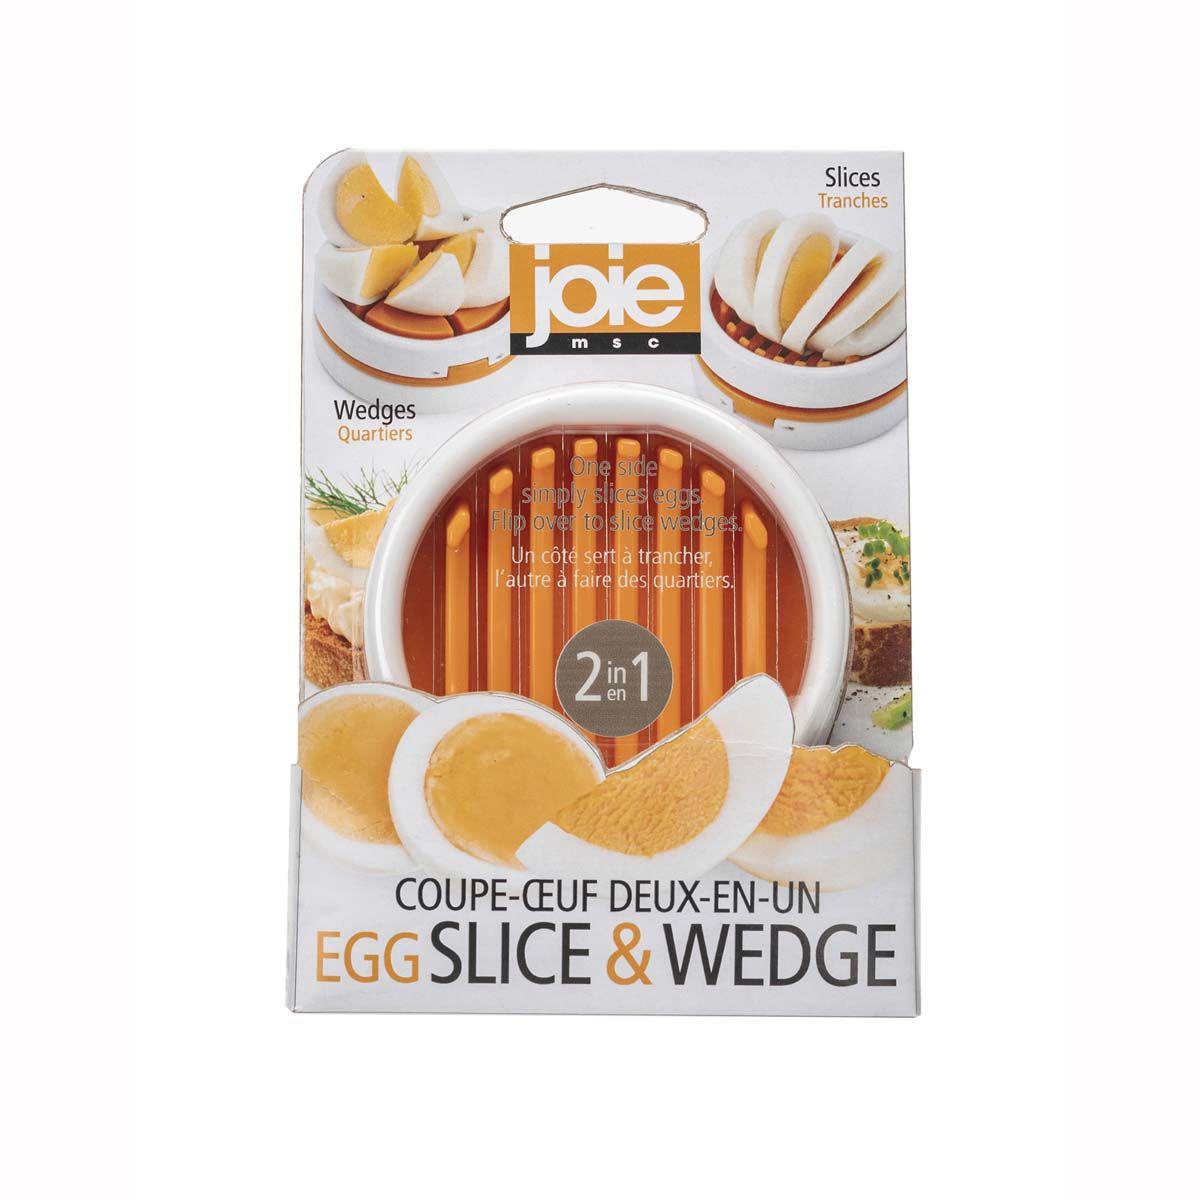 Joie Egg Slicer and Wedger